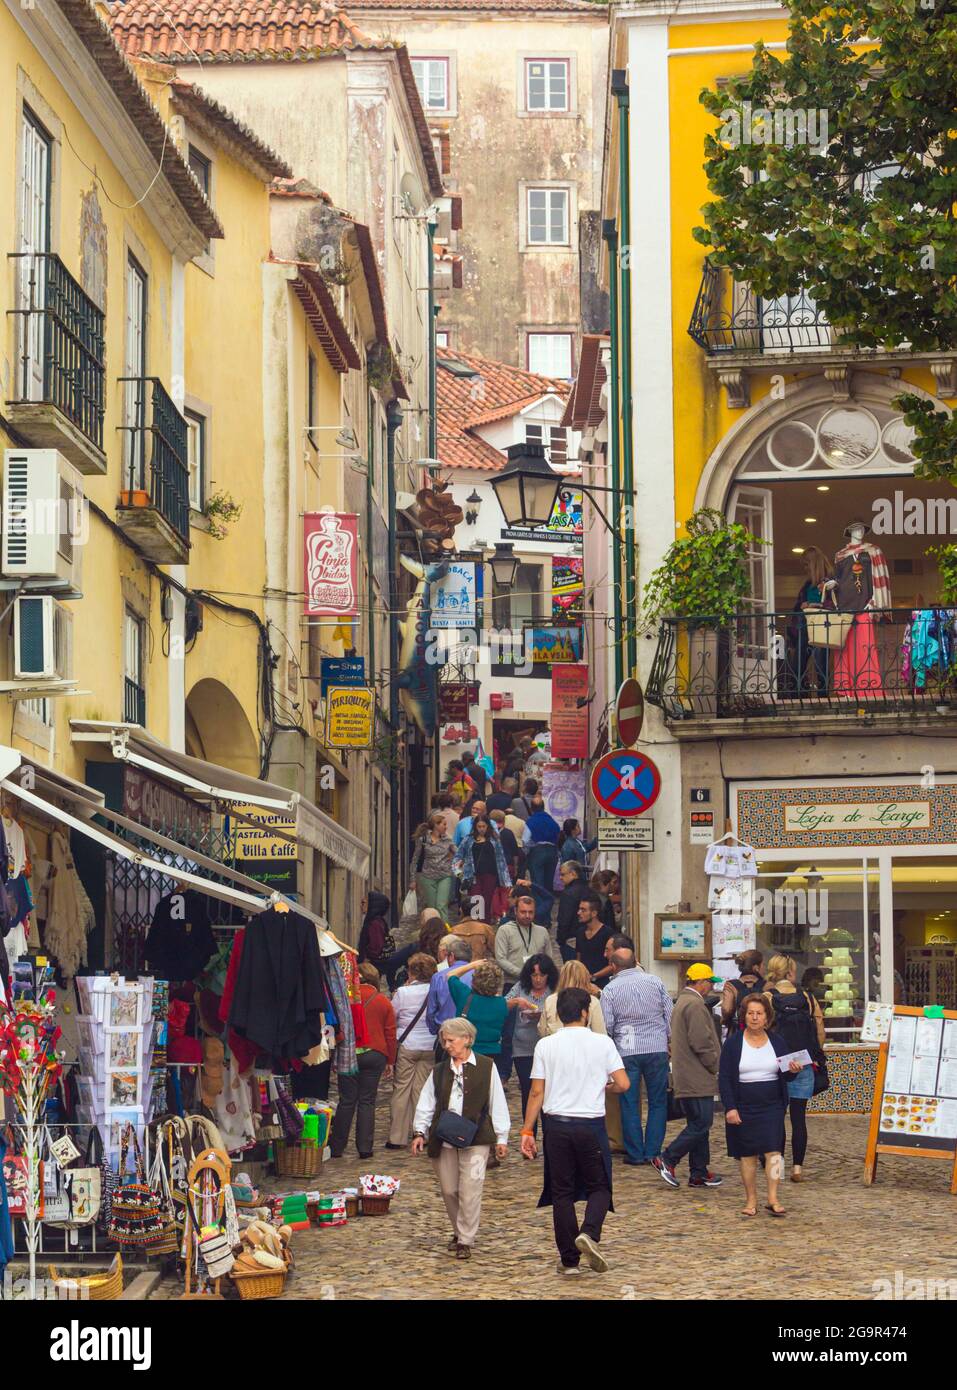 Sintra, distretto di Lisbona, Portogallo. Trafficata via dello shopping affollata di visitatori. Foto Stock